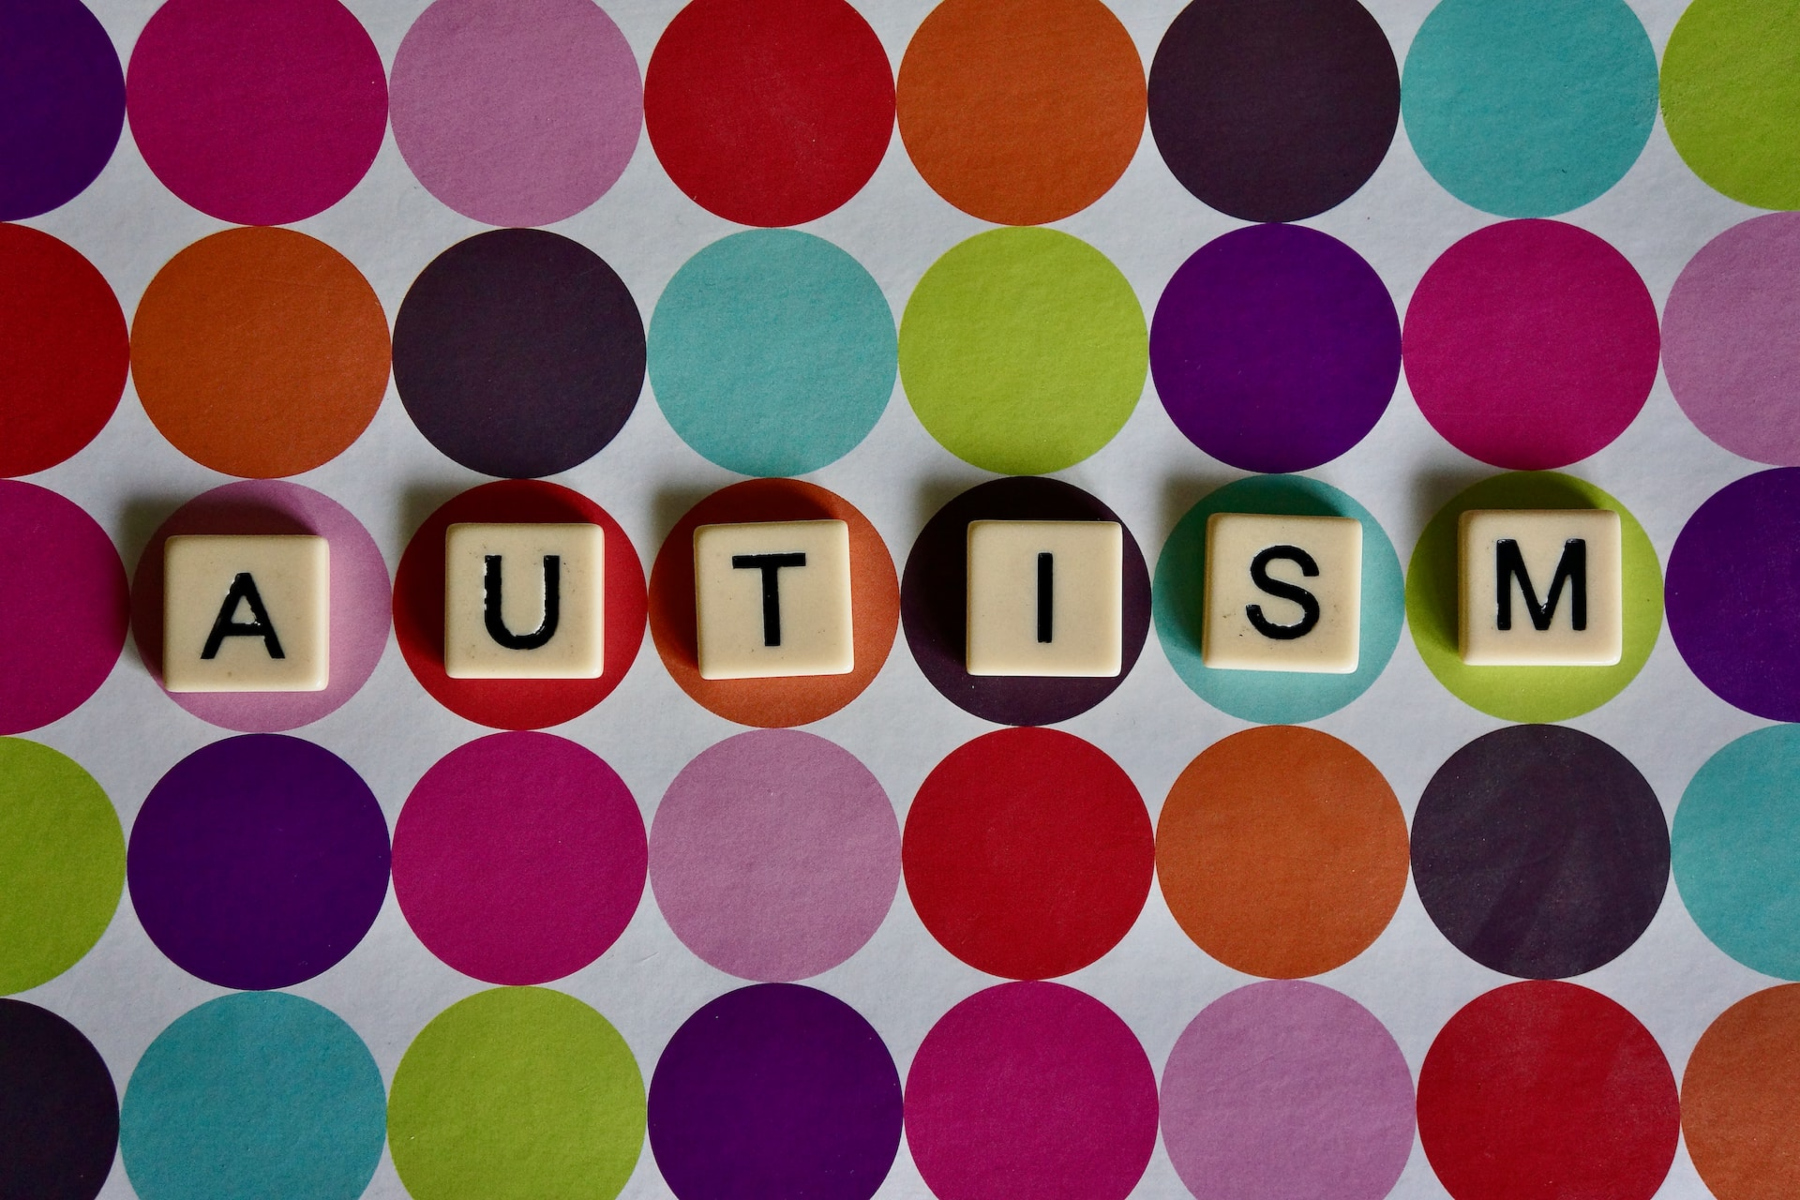 Αυτισμός: Η ατμοσφαιρική ρύπανση μπορεί να μεταφέρει παιδιά με αυτισμό στο νοσοκομείο;